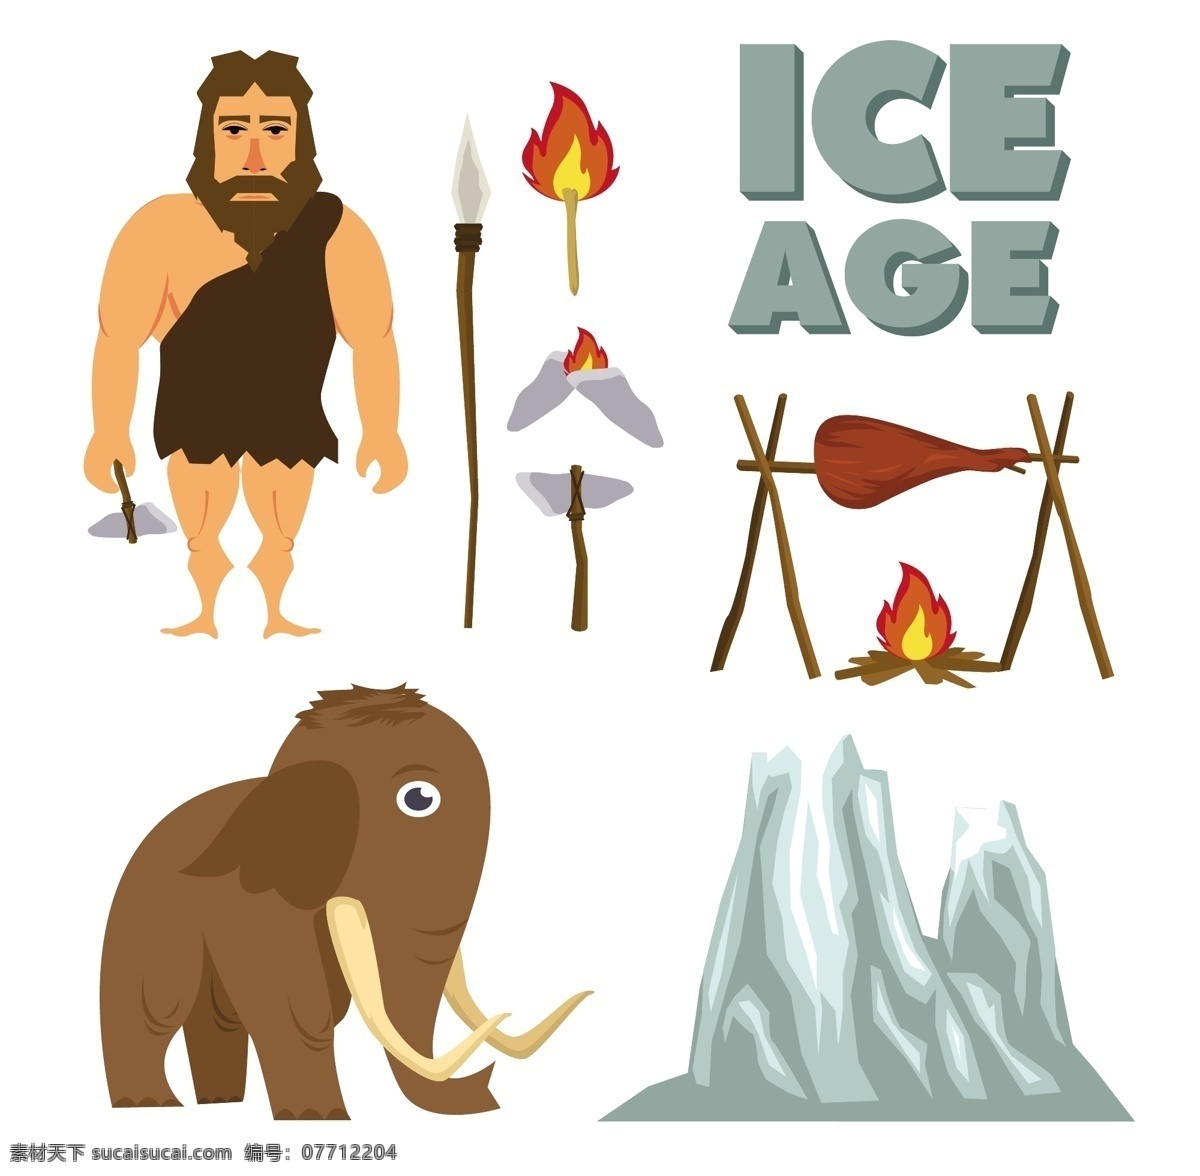 野人矢量素材 火 冰河世纪 大象 野人 矢量素材